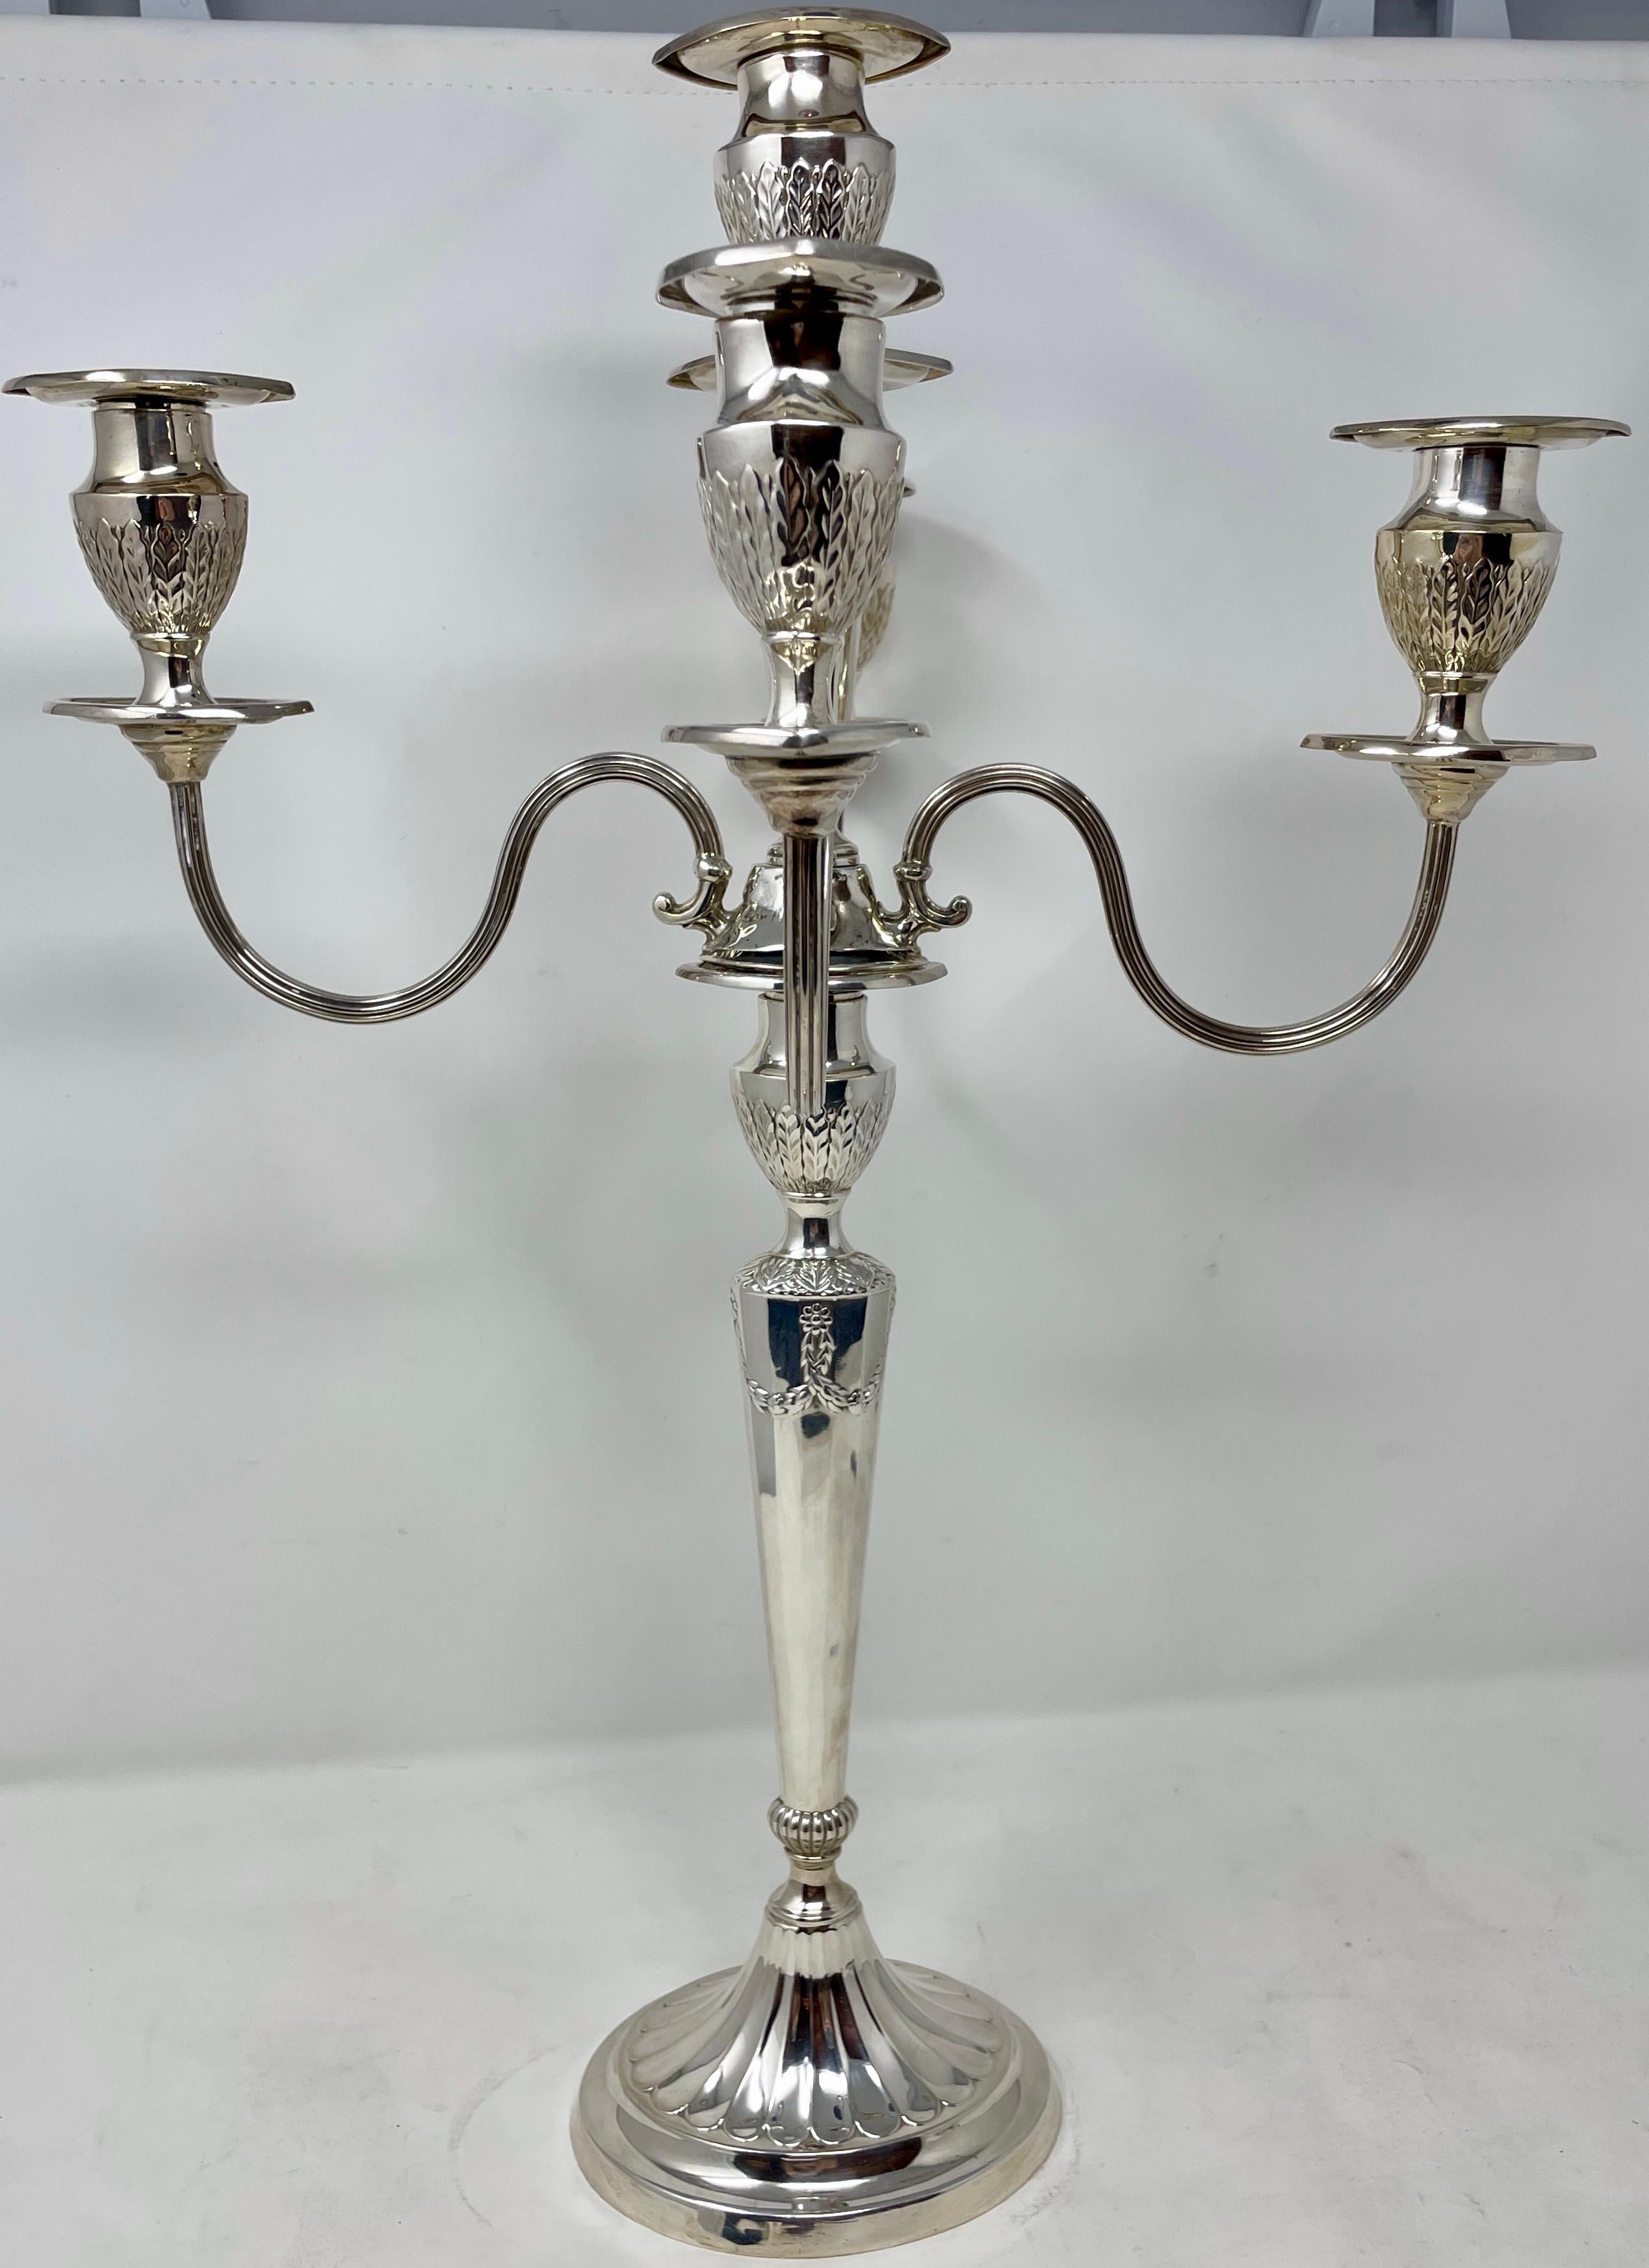 Paire de candélabres anglais anciens de l'époque édouardienne, à 5 lumières, en métal argenté, poinçonnés 